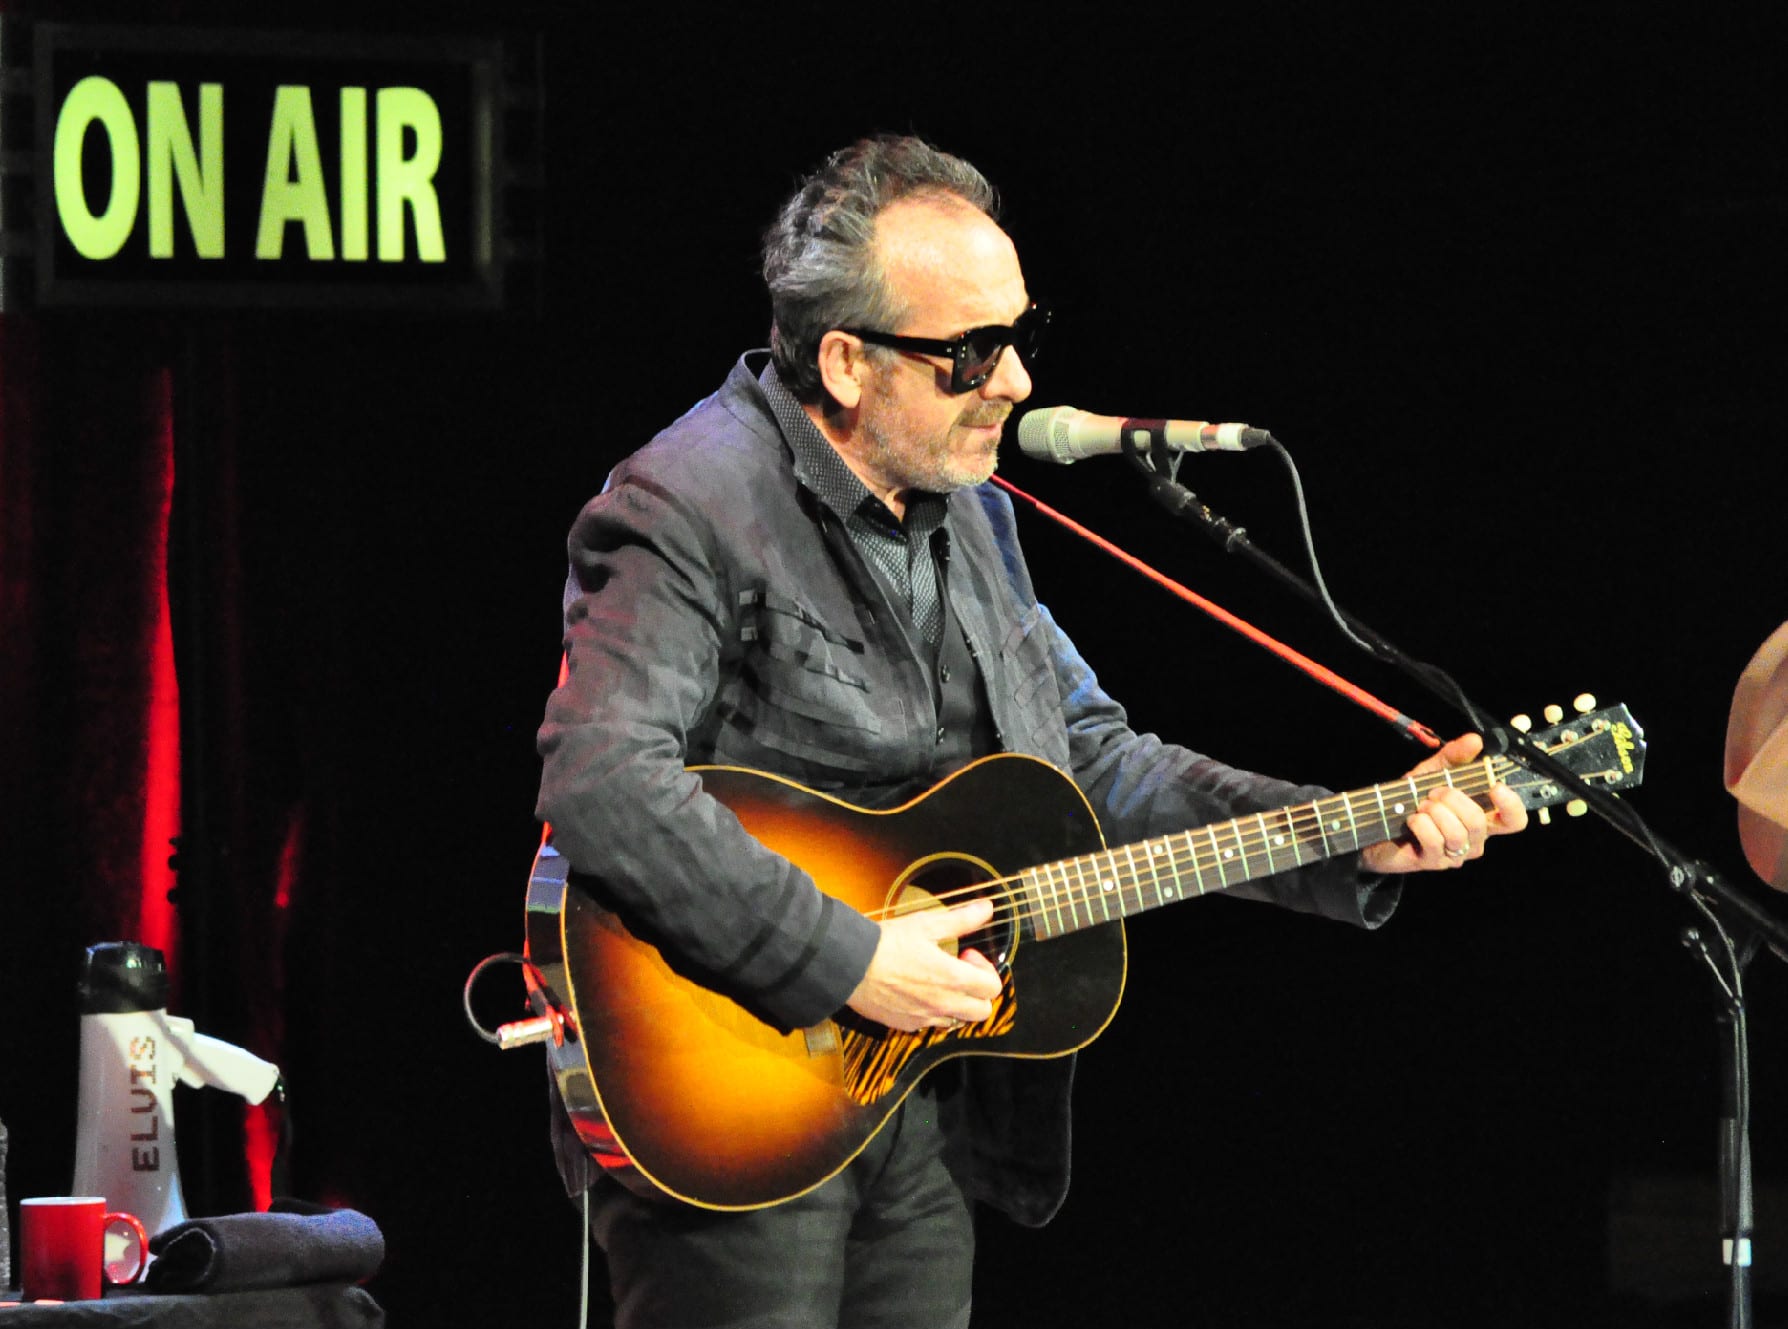 Crónica del concierto de Elvis Costello en Zaragoza, Sala Mozart del Auditorio, 04-06-2016